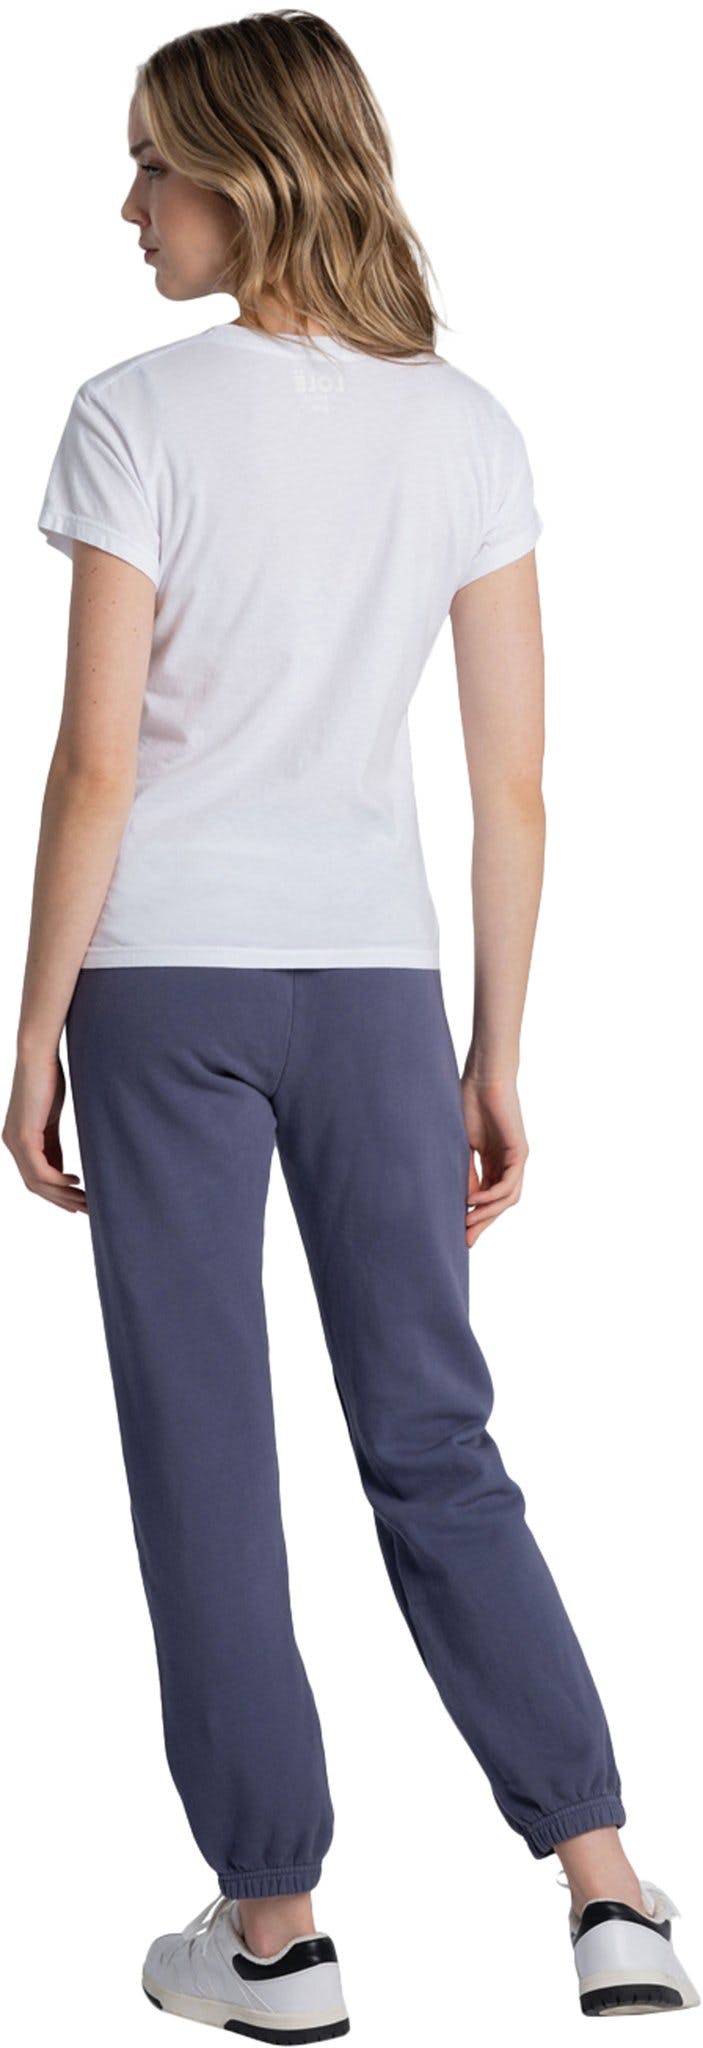 Numéro de l'image de la galerie de produits 2 pour le produit Pantalon de jogging en coton Lolë Edition - Femme